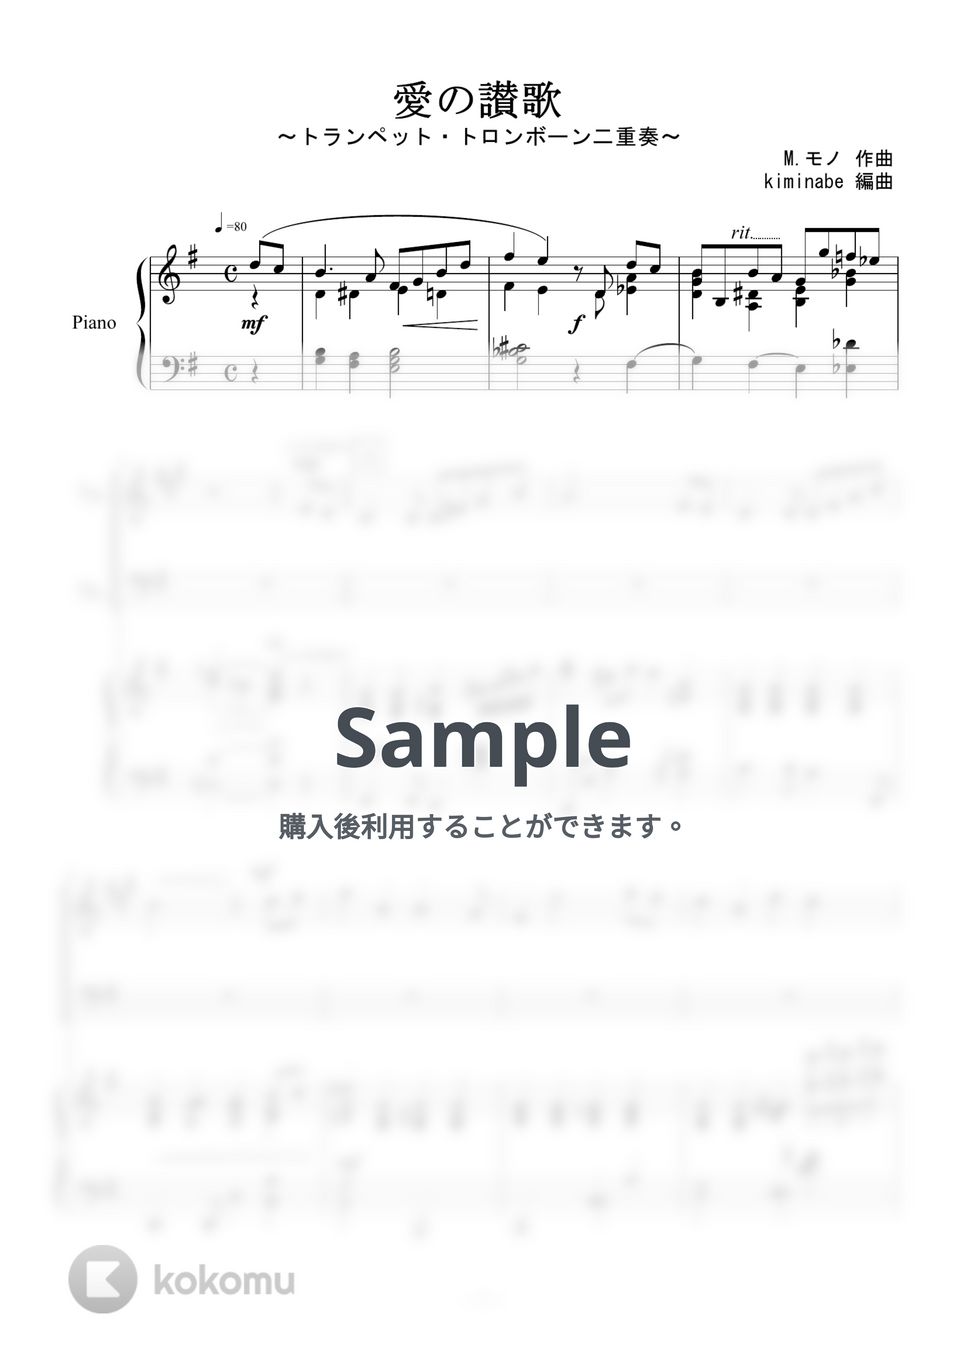 越路吹雪 - 愛の讃歌 (トランペット・トロンボーン二重奏) by kiminabe